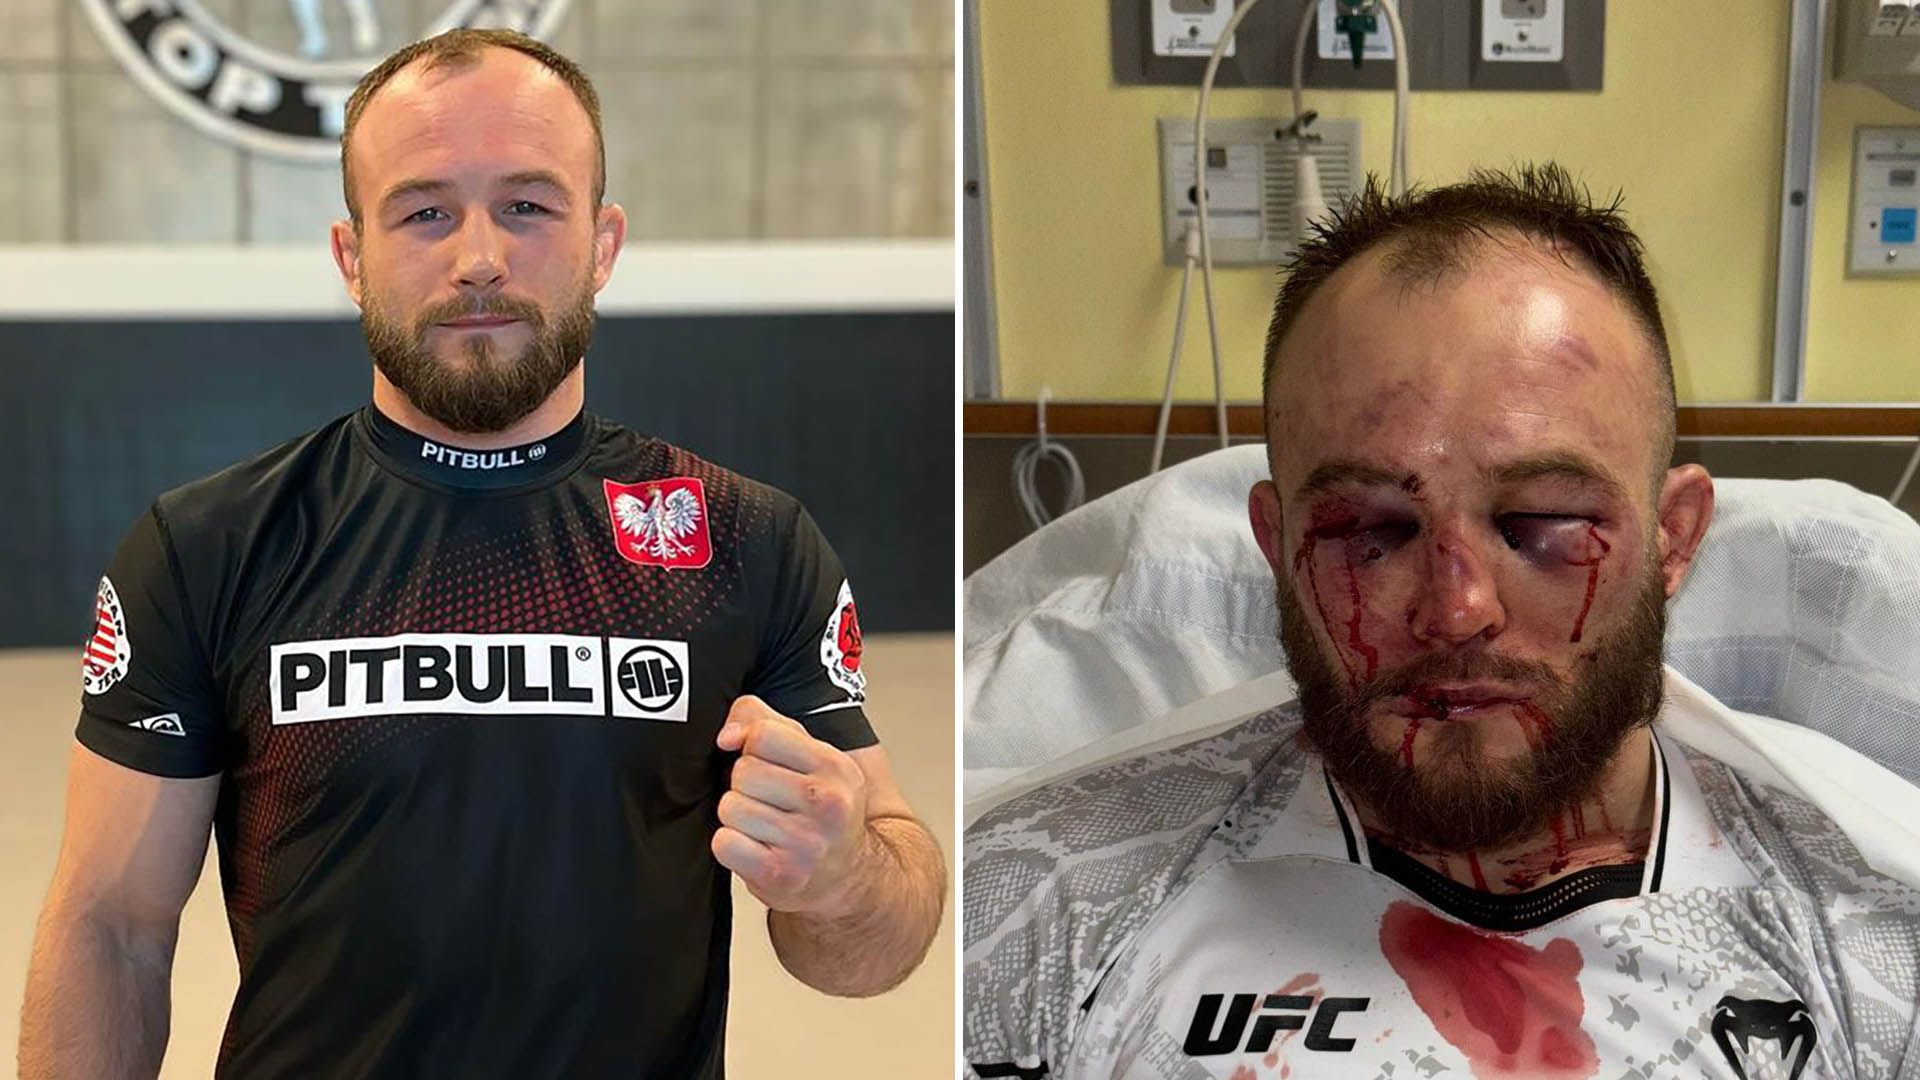 Un luchador mostró su rostro tras una pelea